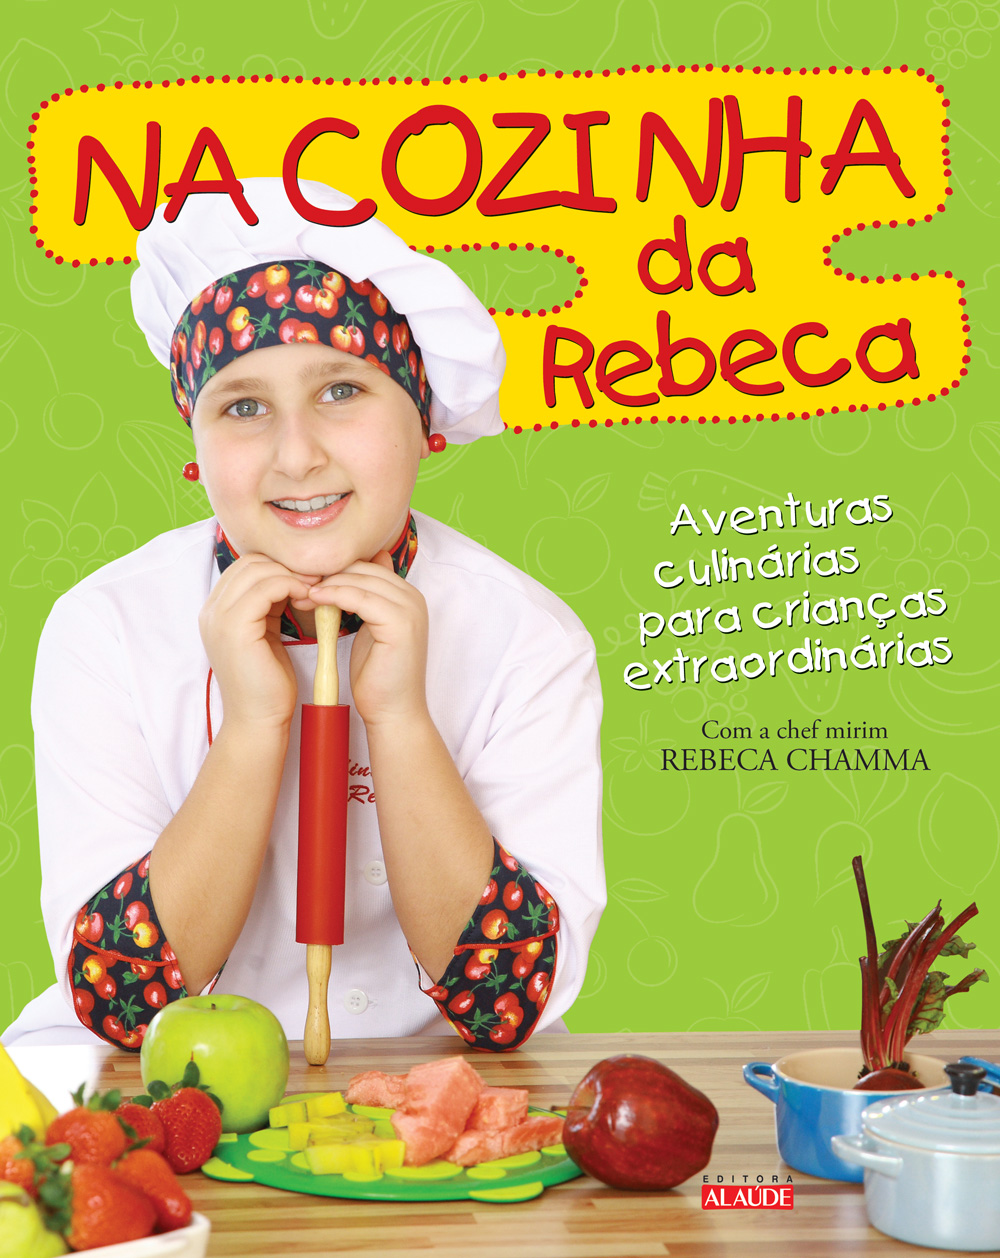 Blog Consulte And Compre Chef Mirim Lança Livro De Culinária Para Crianças